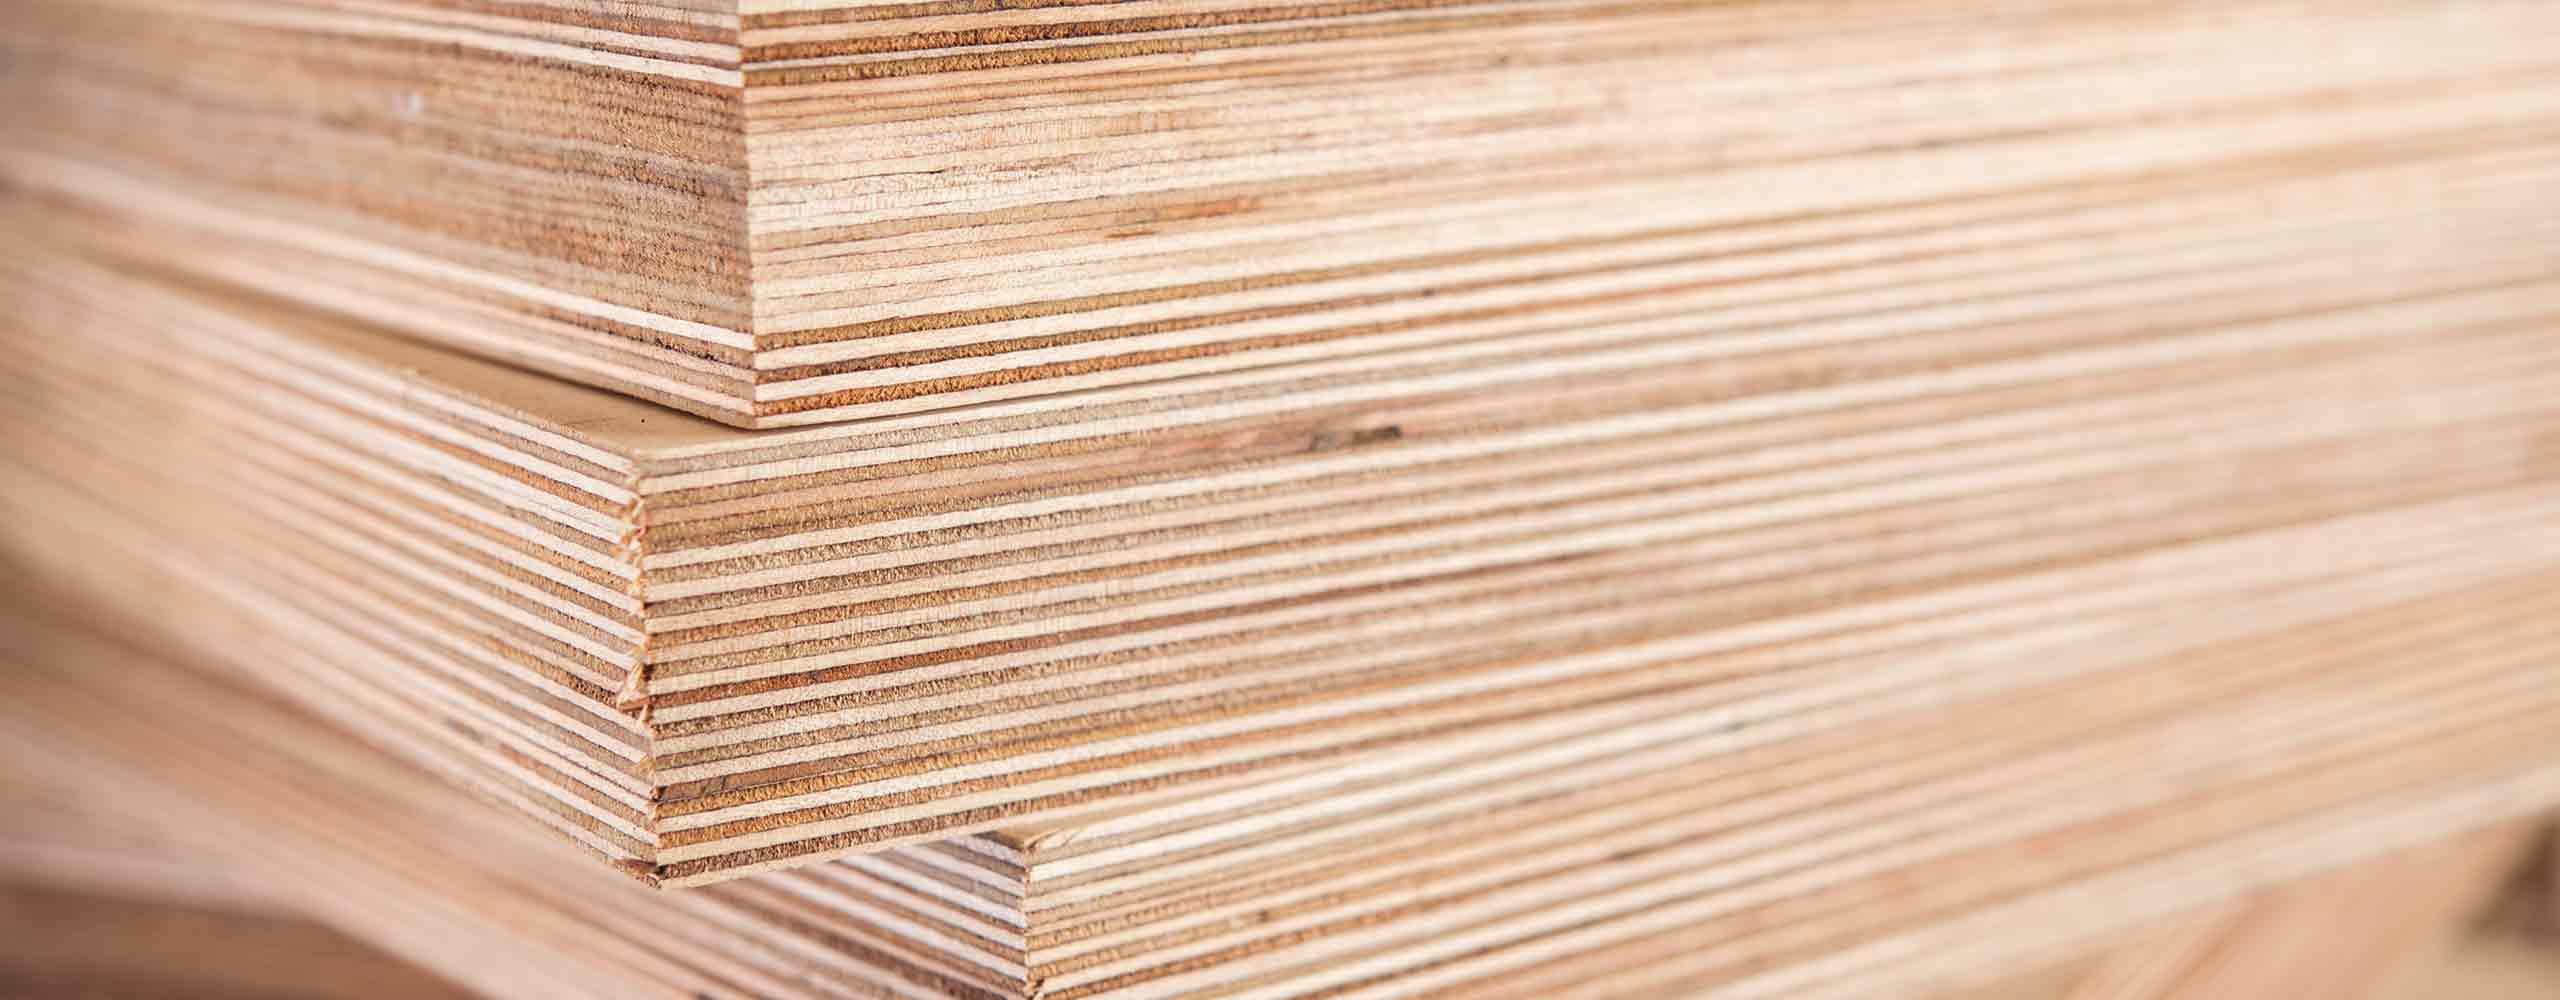 Solutions pour le bois et les matériaux à base de bois